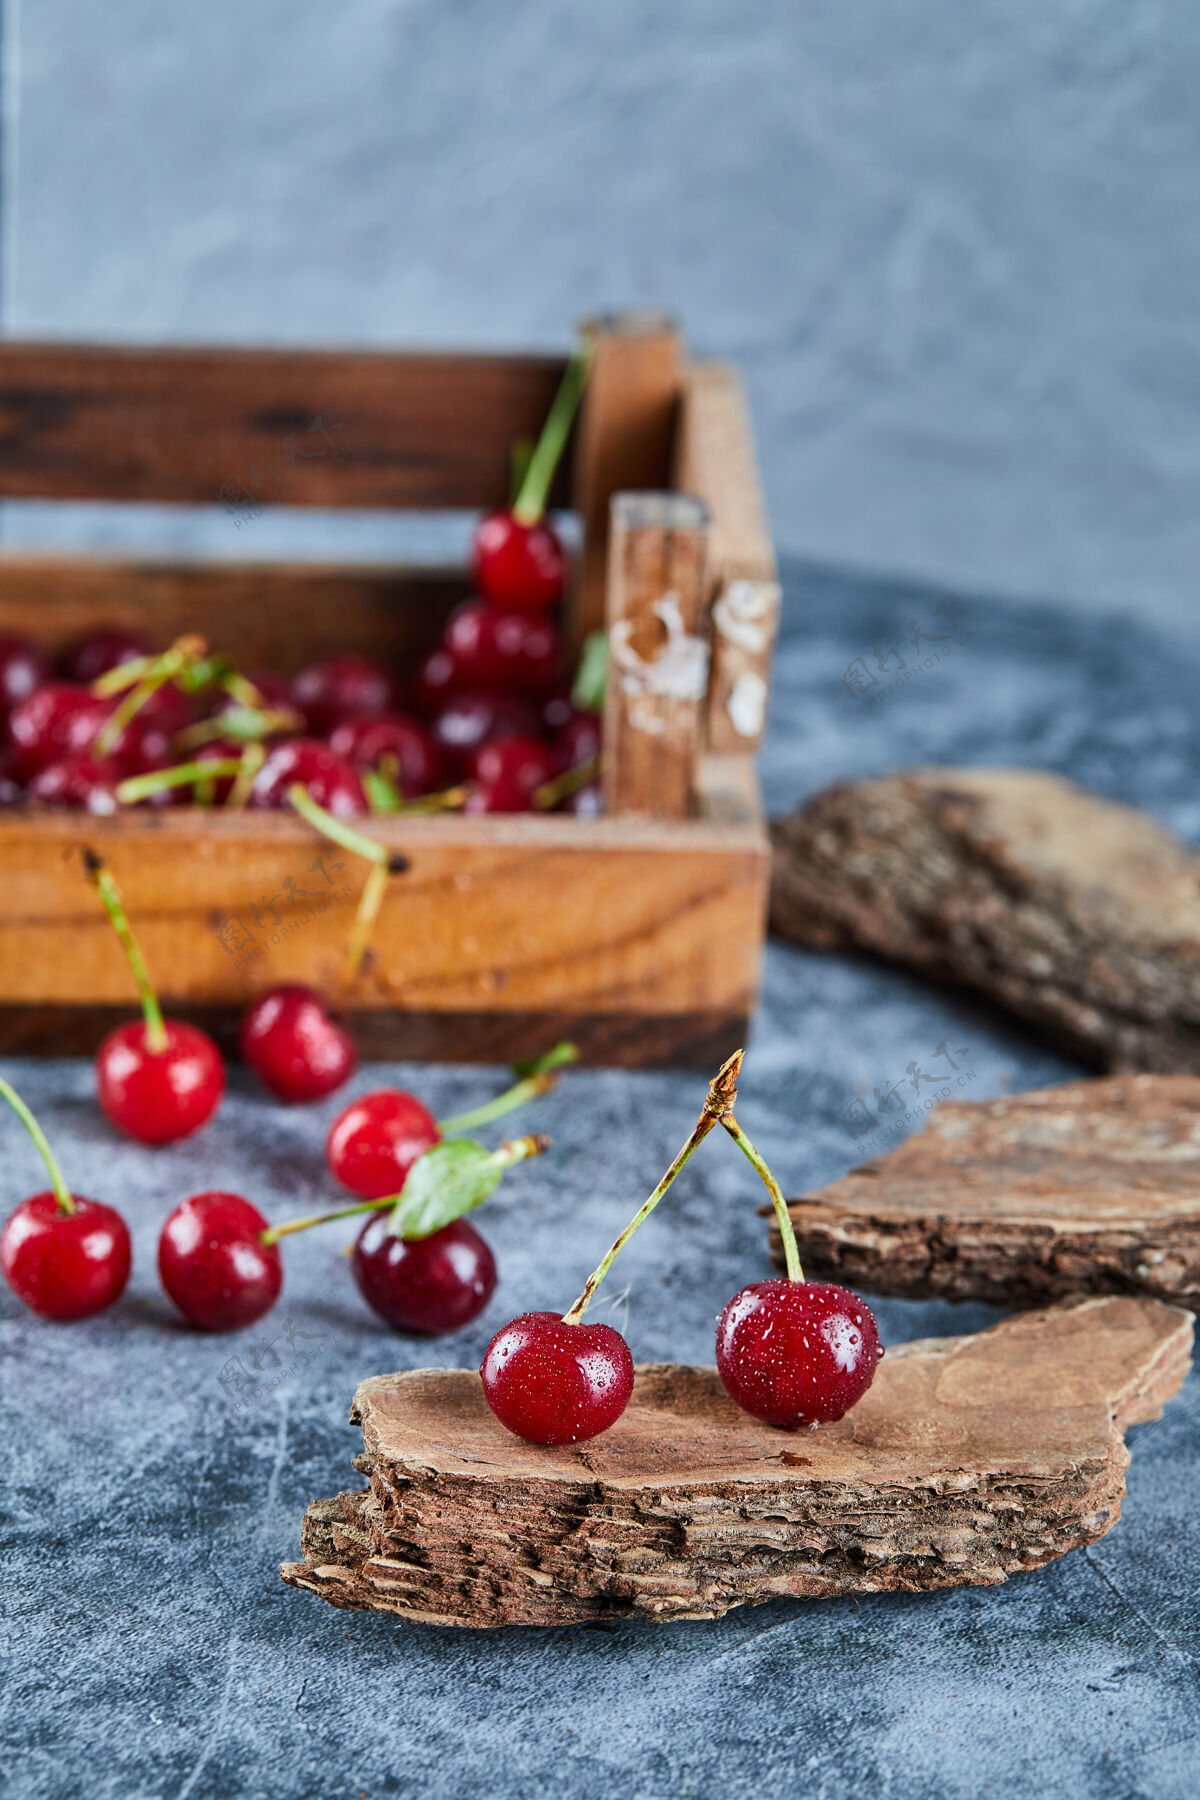 浆果红红的新鲜多汁的樱桃放在一个有叶子的木箱里美味新鲜篮子